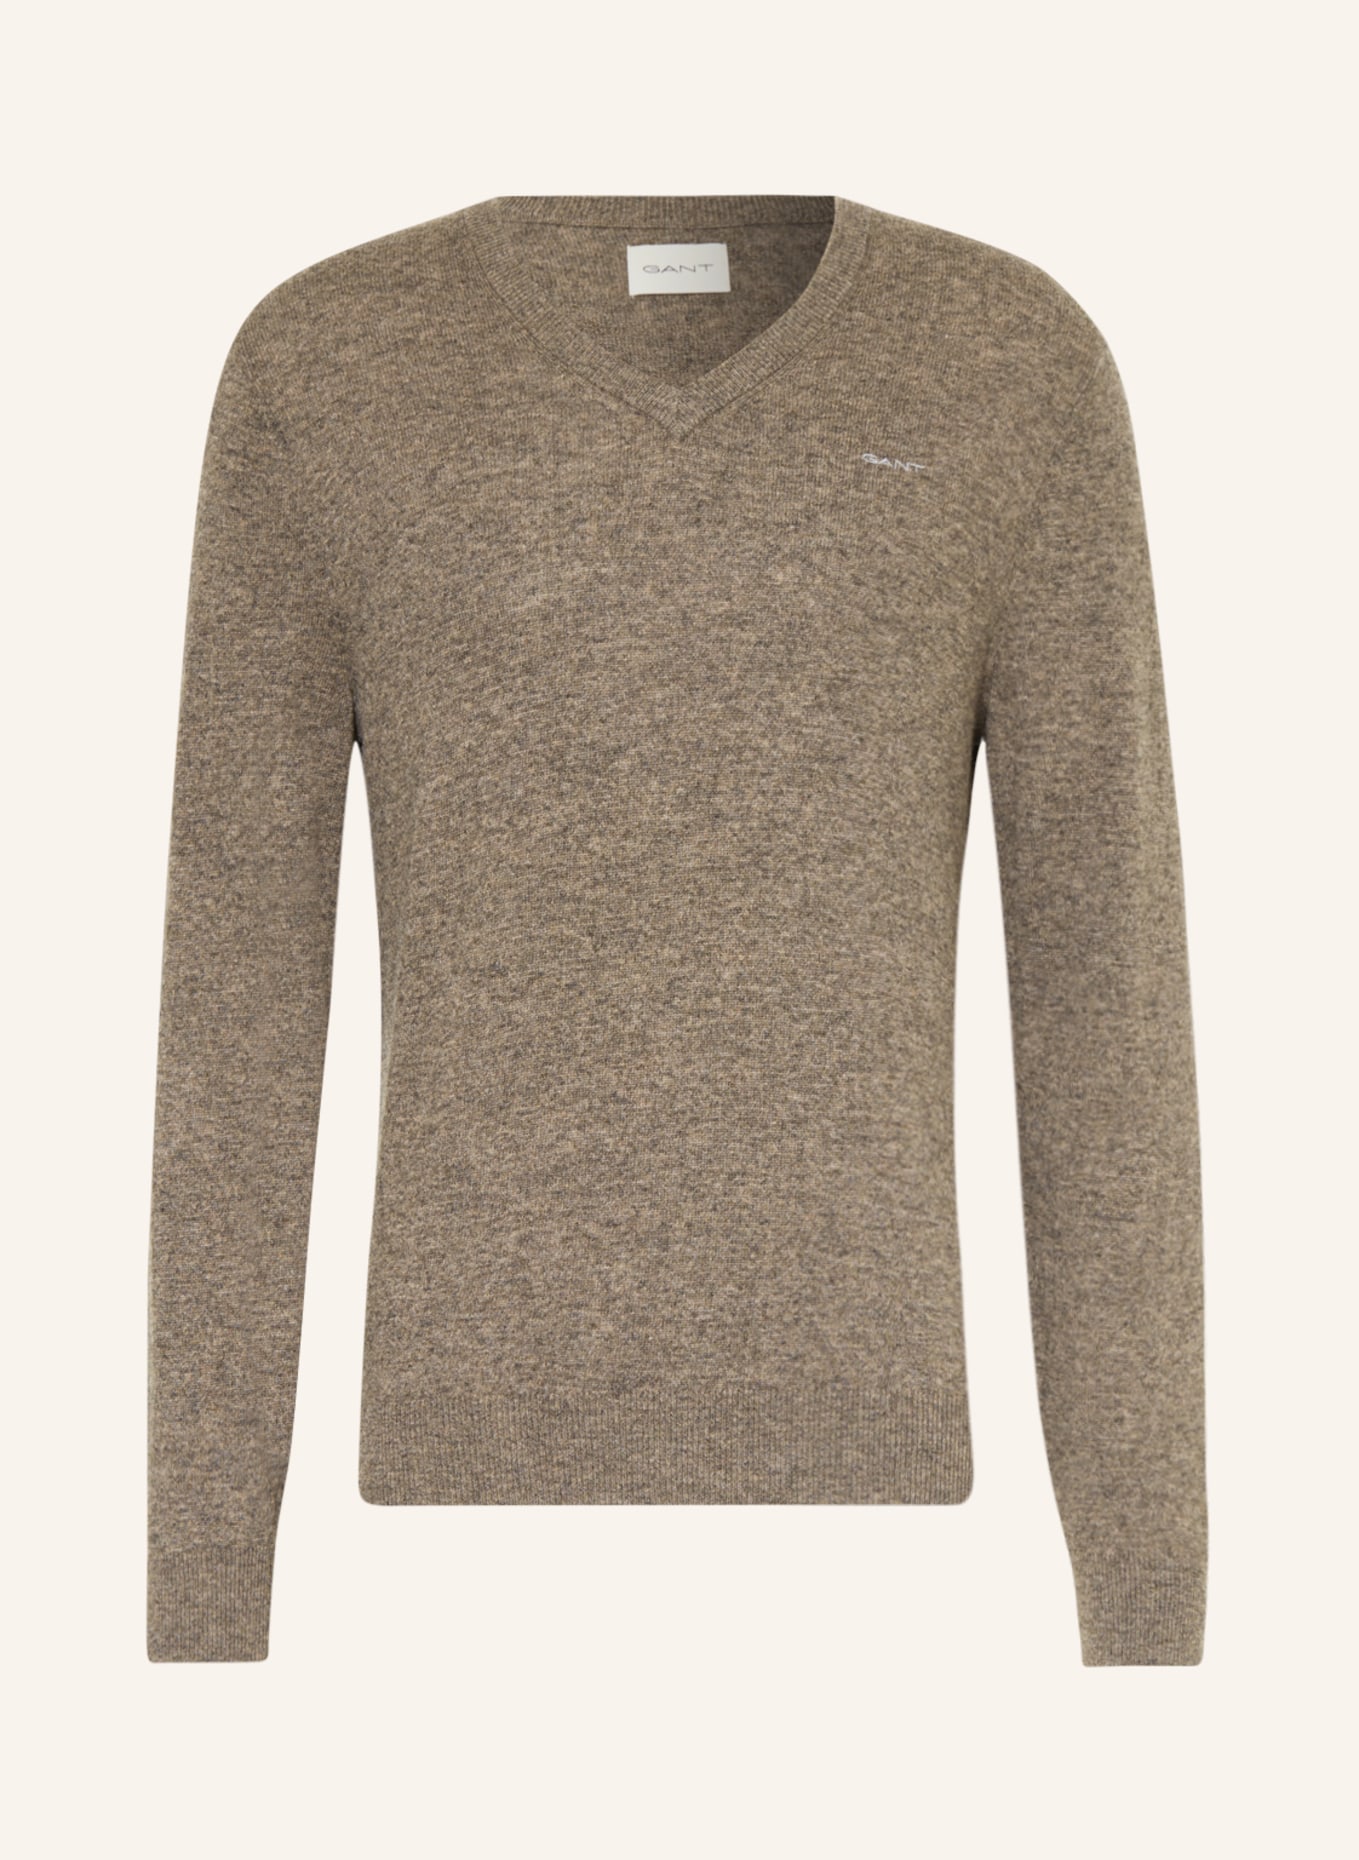 GANT Pullover, Farbe: TAUPE (Bild 1)